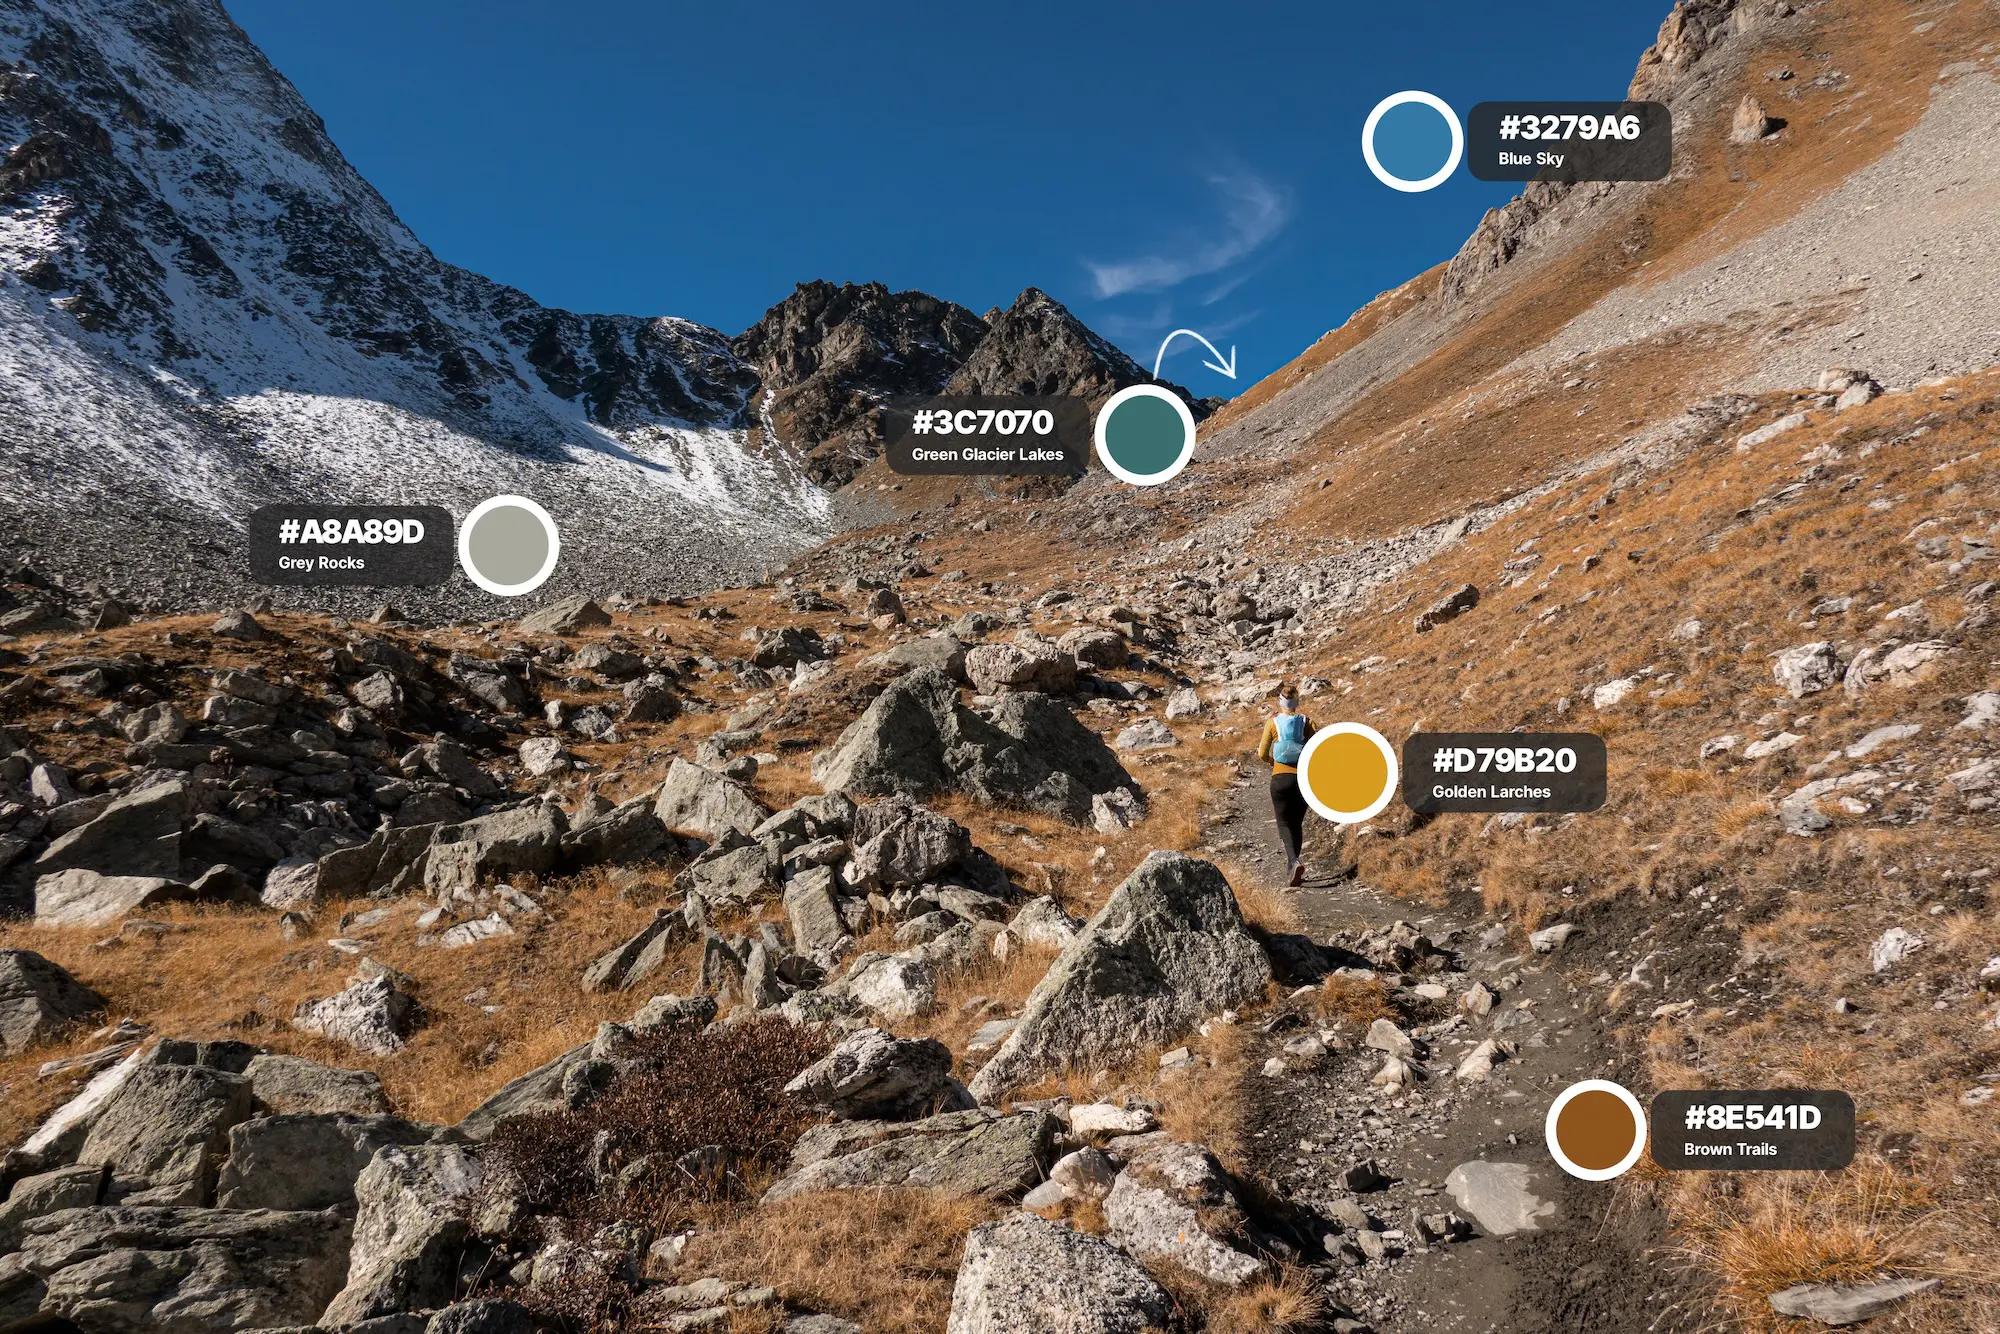 Die Farbpalette des Pas de Chèvres auf einen Blick: Braune Trails, goldene Lärchen, türkisblauer Gletschersee, grauer Fels und blauer Himmel.